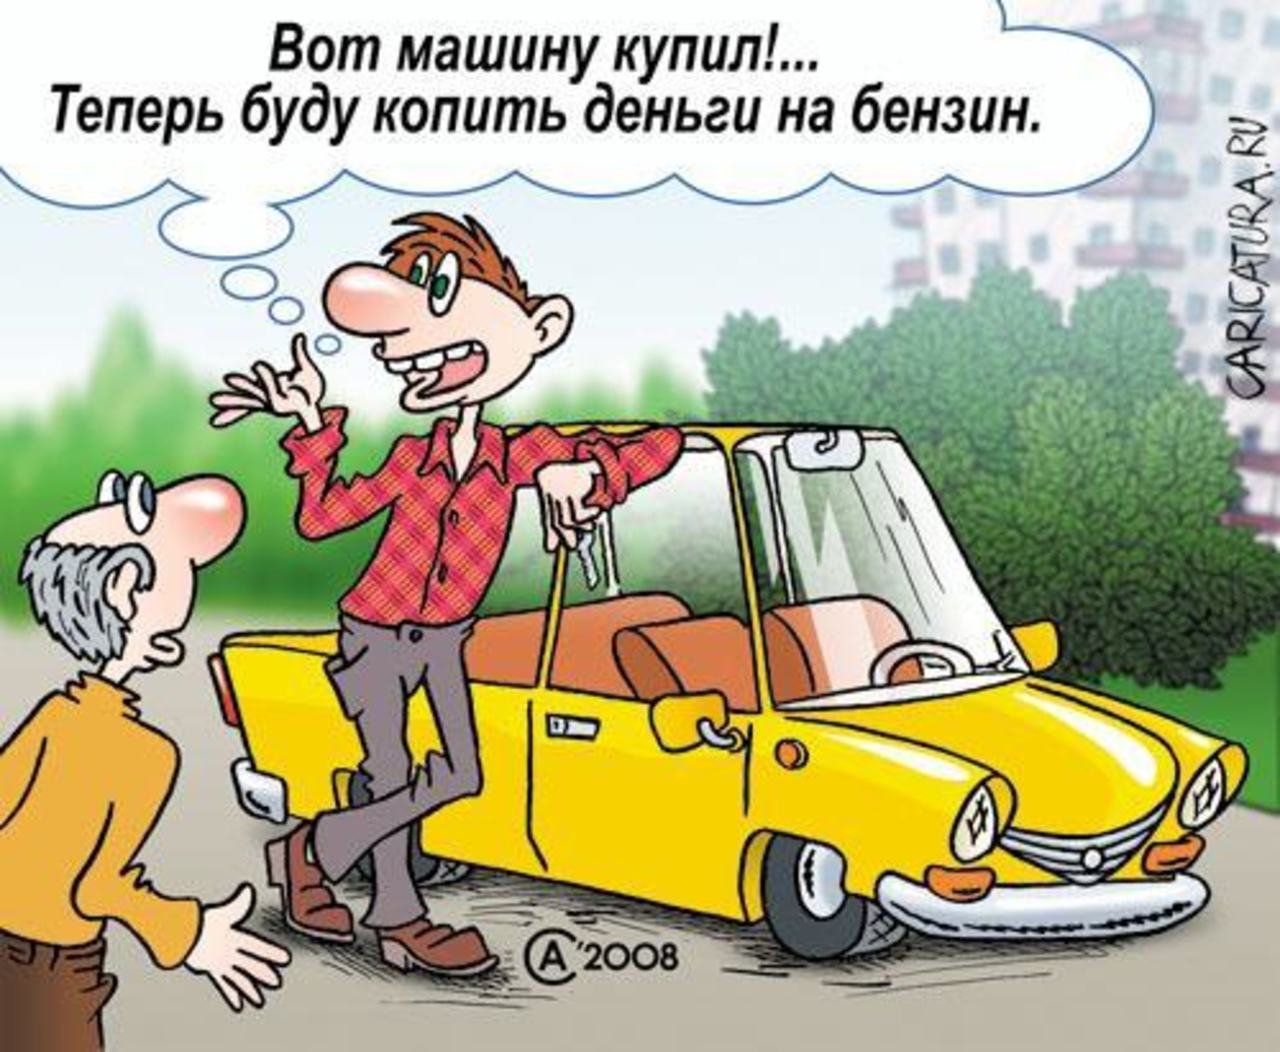 Насчет машины. Анекдот про бензин. Автомобиль карикатура. Шутки про покупку машины. Шутки про топливо.